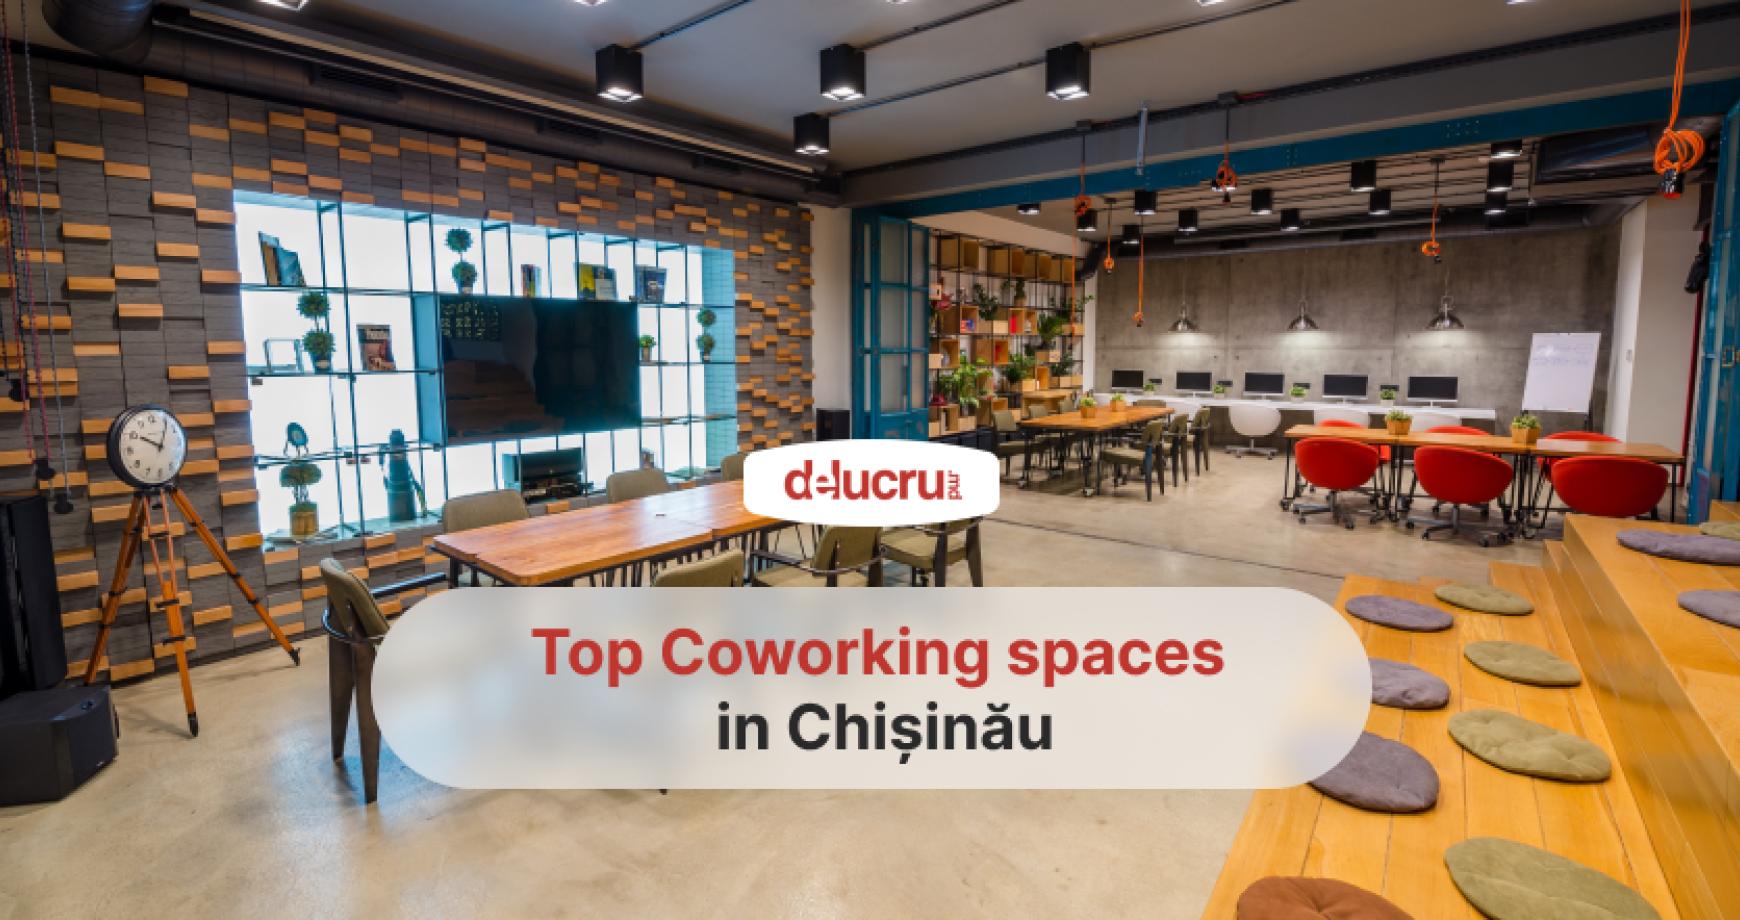 Coworking spaces in Chișinău